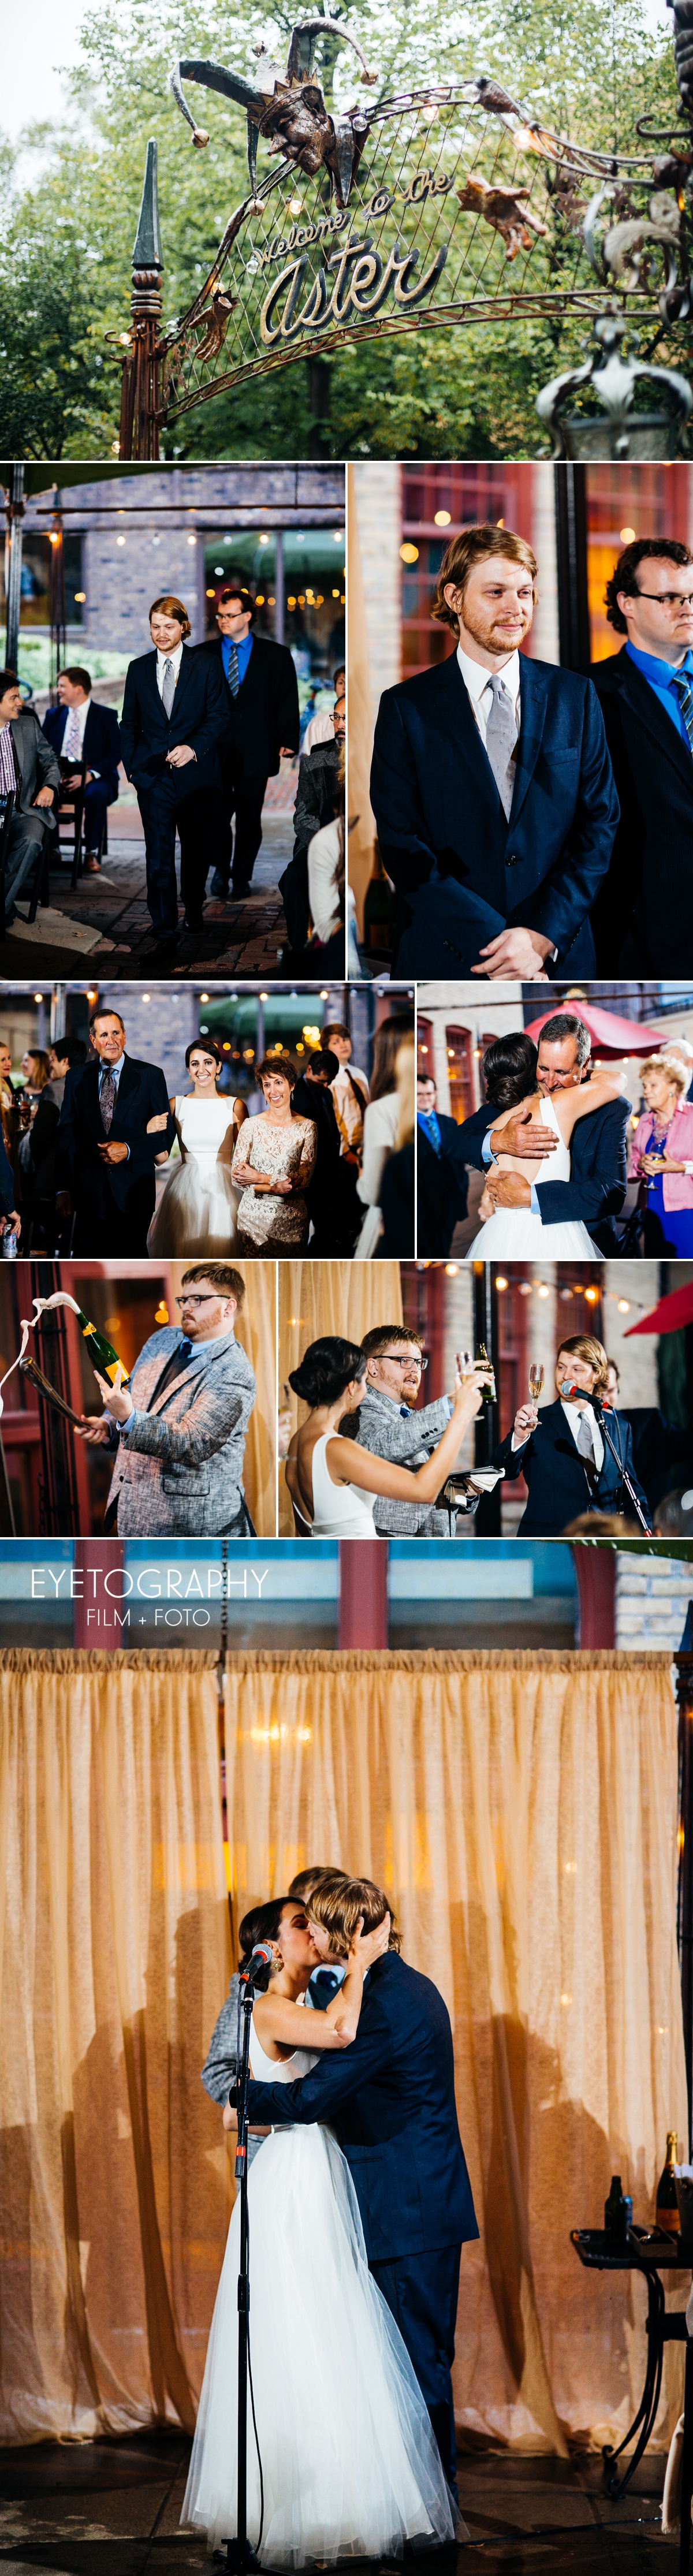 Aster Cafe Wedding - Eyetography Film + Foto | Katharine + Blake 8